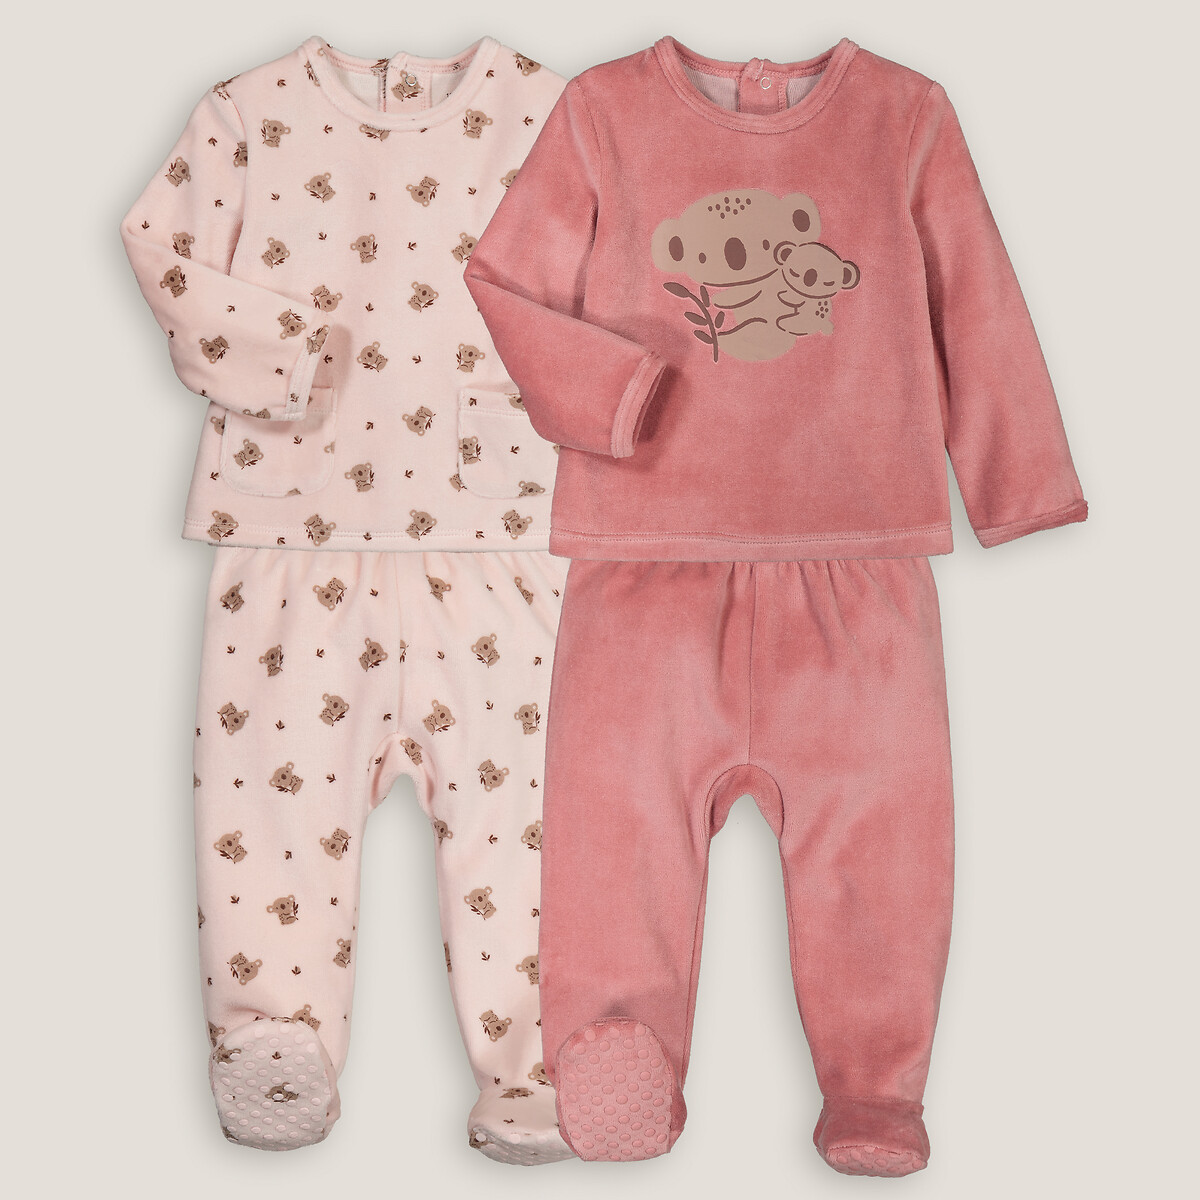 Комплект из двух пижам раздельных из велюра принт коалы  1 мес. - 54 см розовый LaRedoute, размер 1